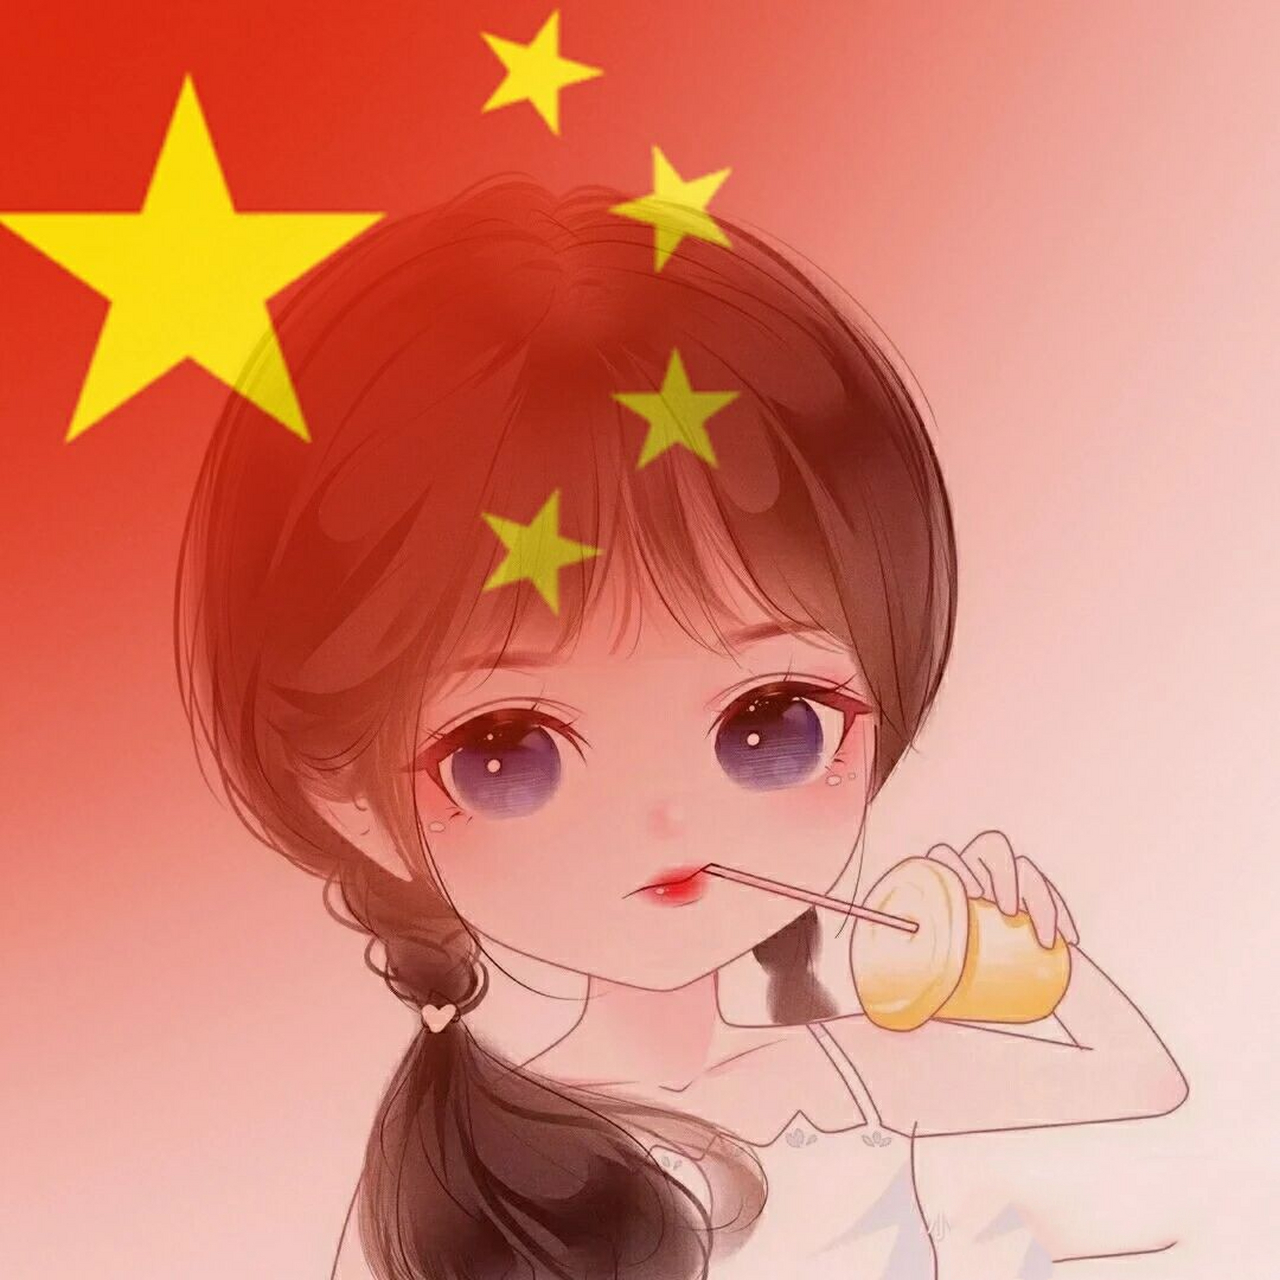 中国头像 国旗动漫图片